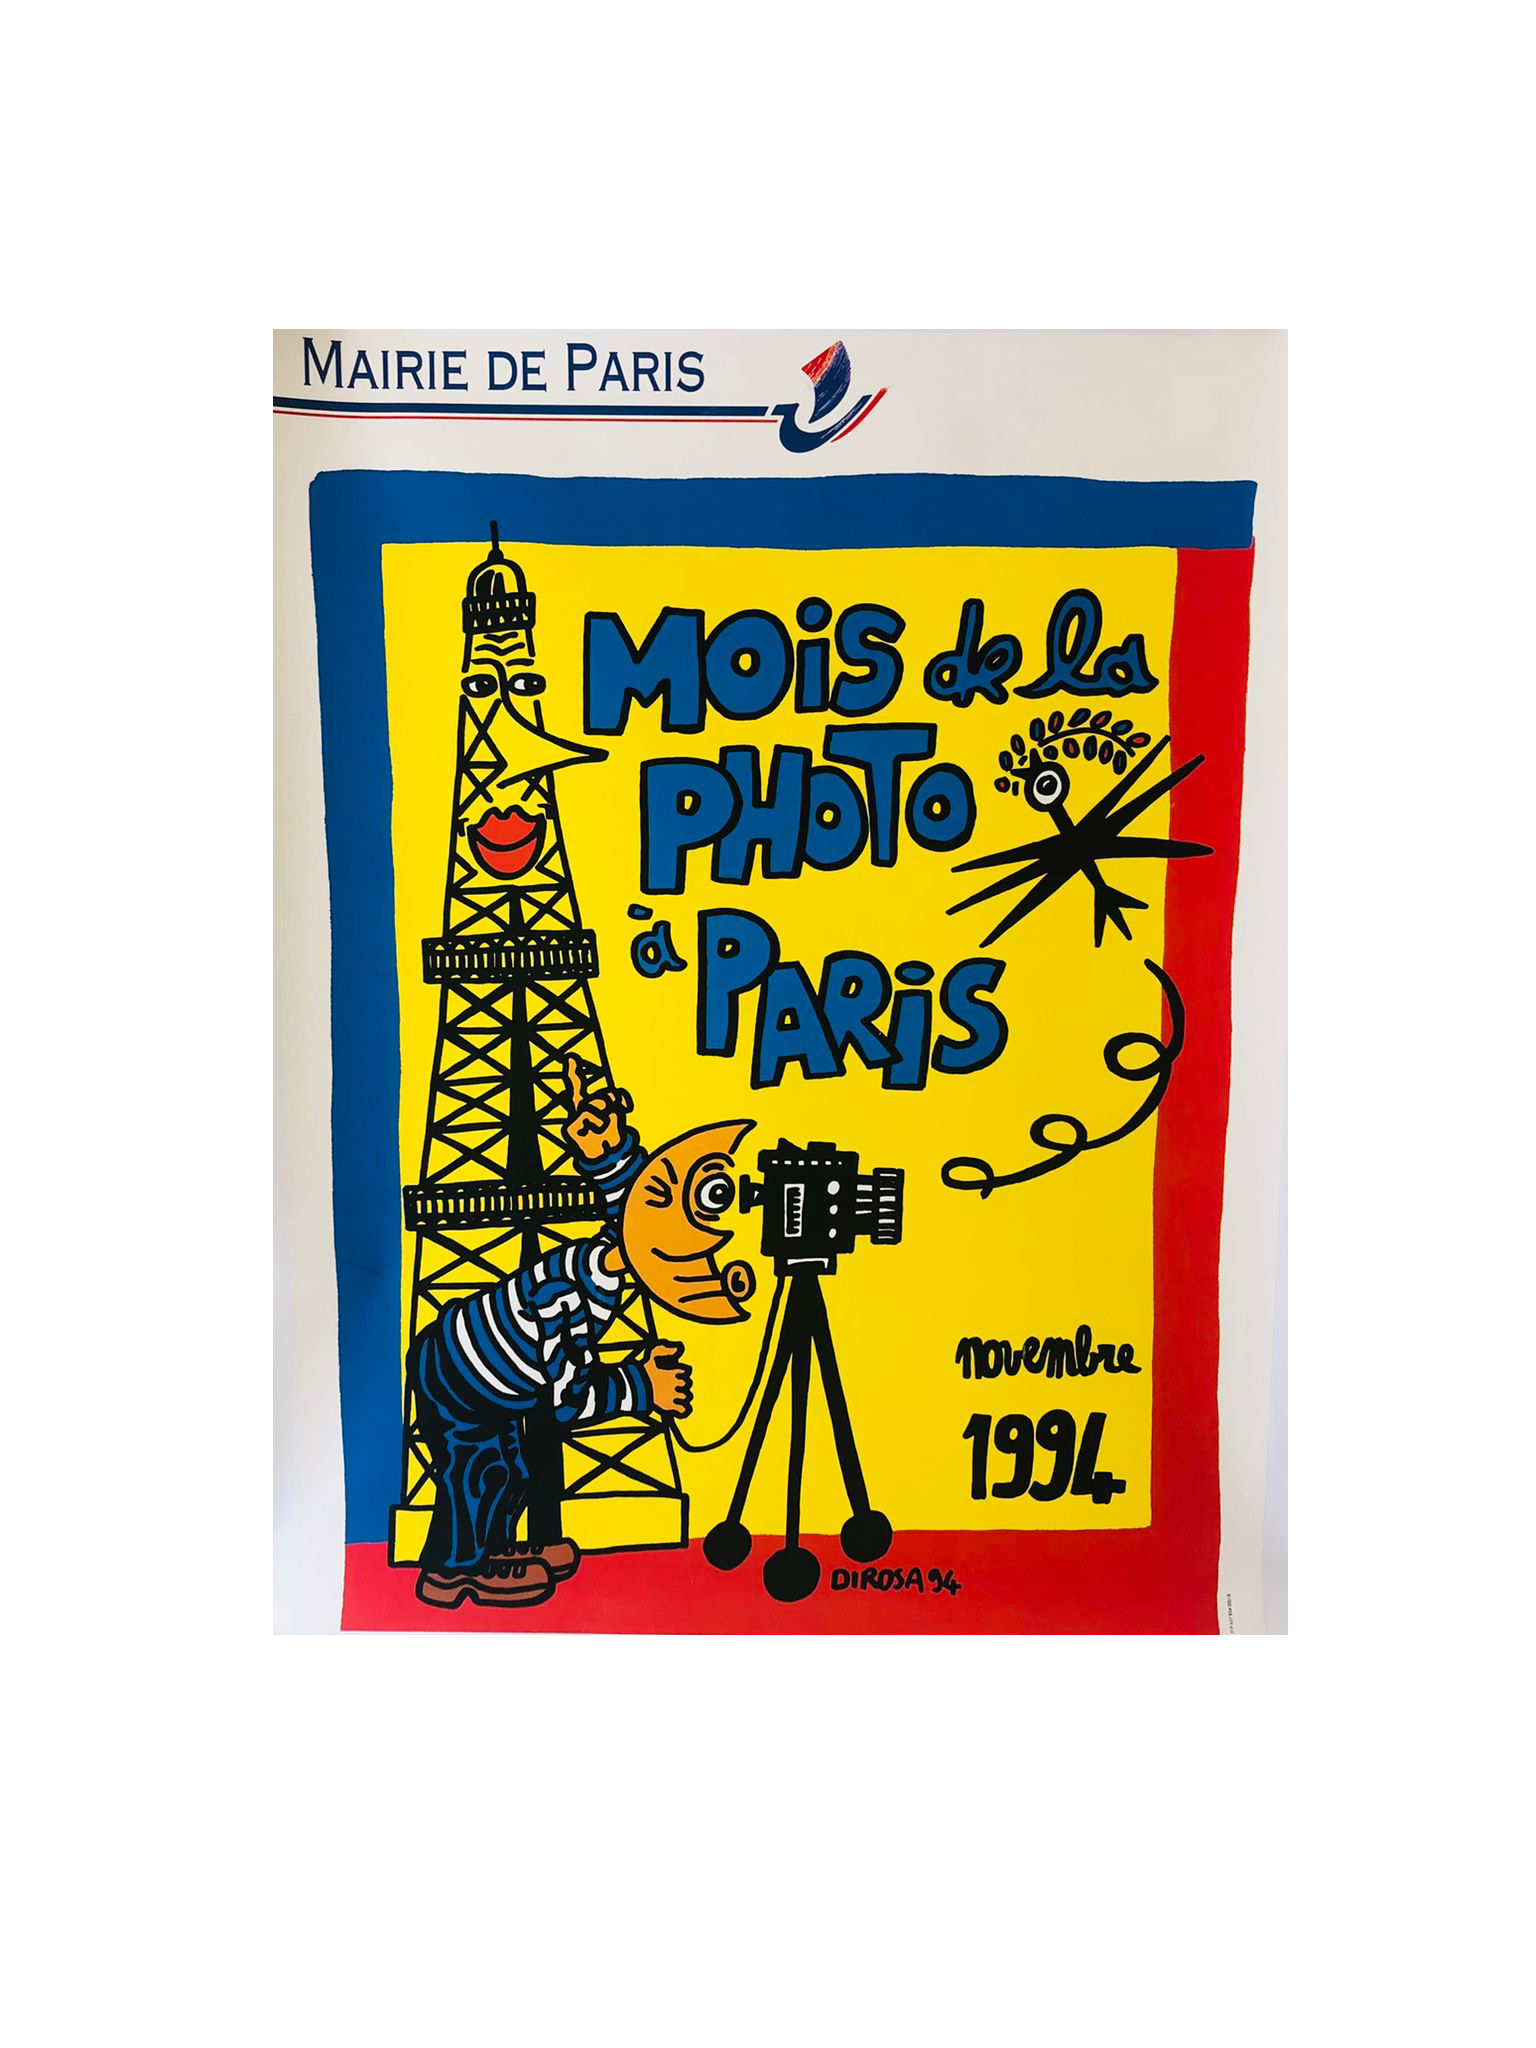 "Photo Month in Paris" (Mois de la Photo a Paris) by Dirosa